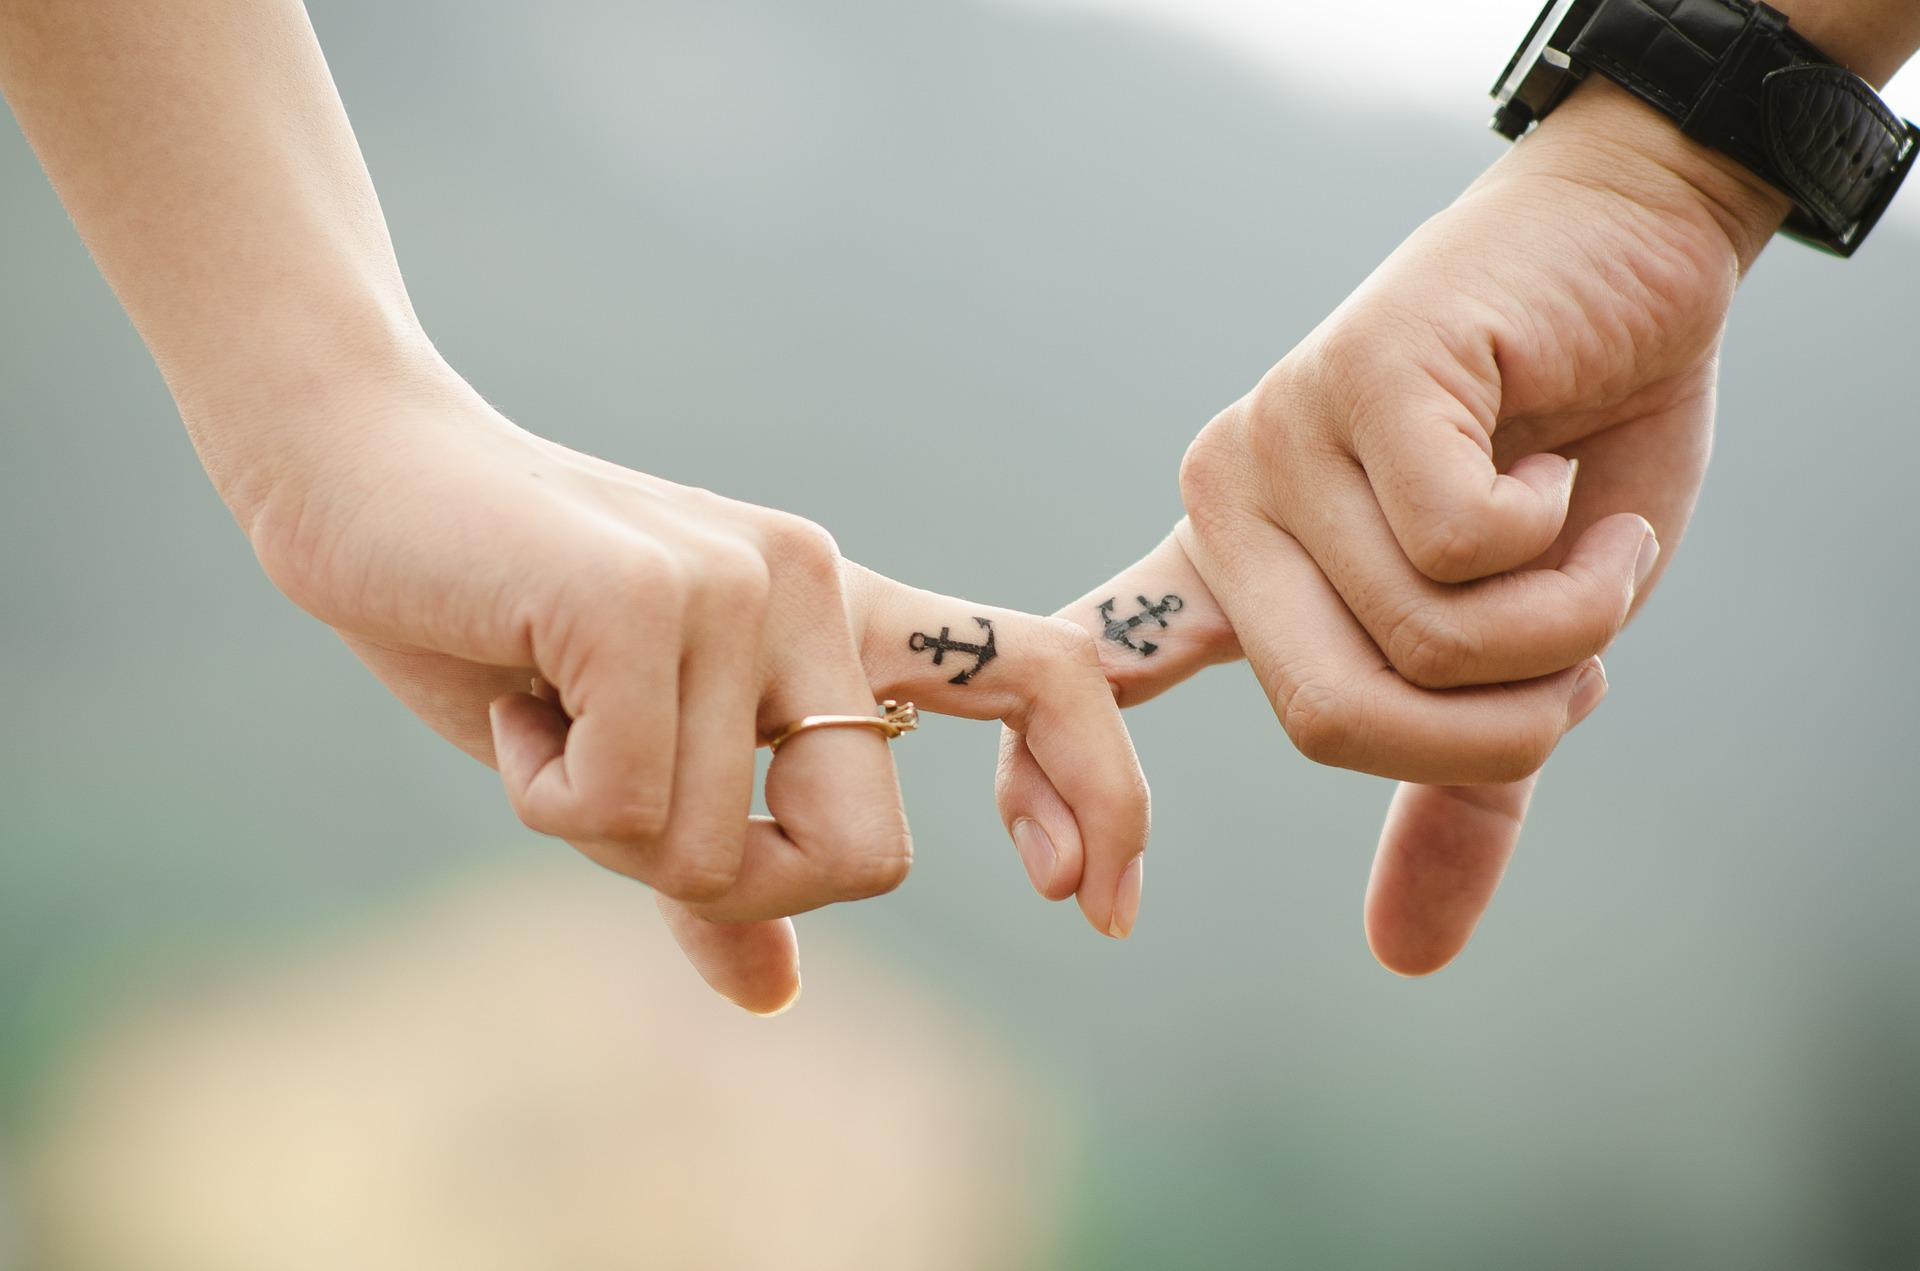 50+ Idéias De Tatuagem De Casais Que Nunca Perderão Seu Significado